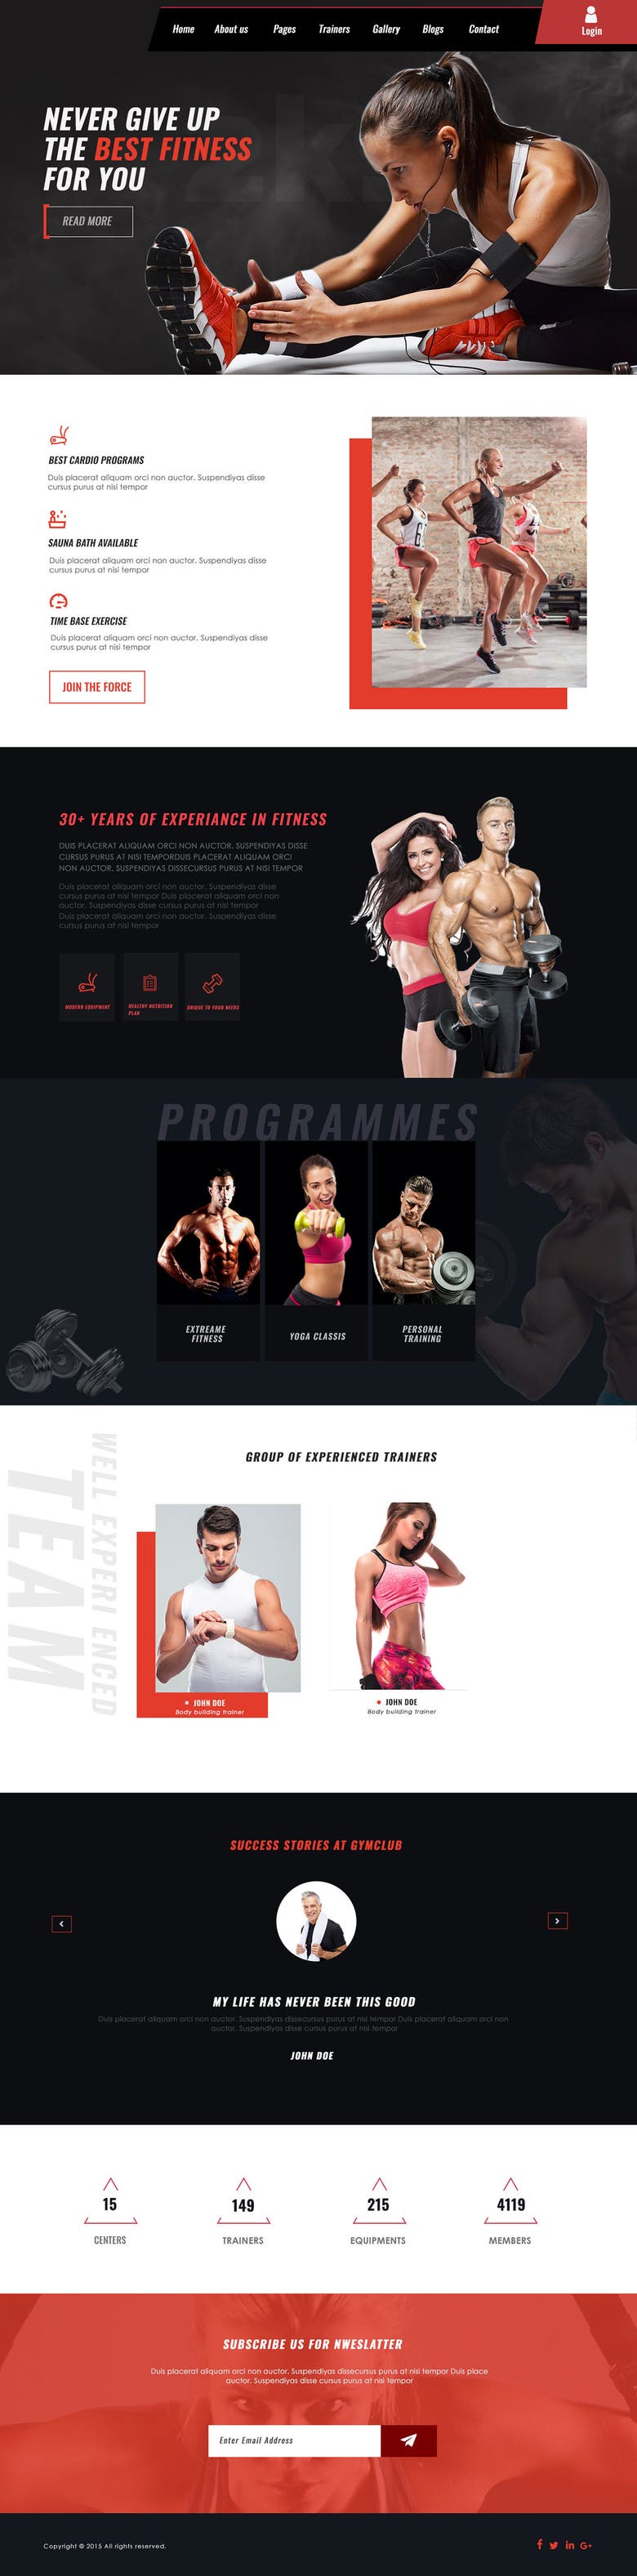 Gym website Designing